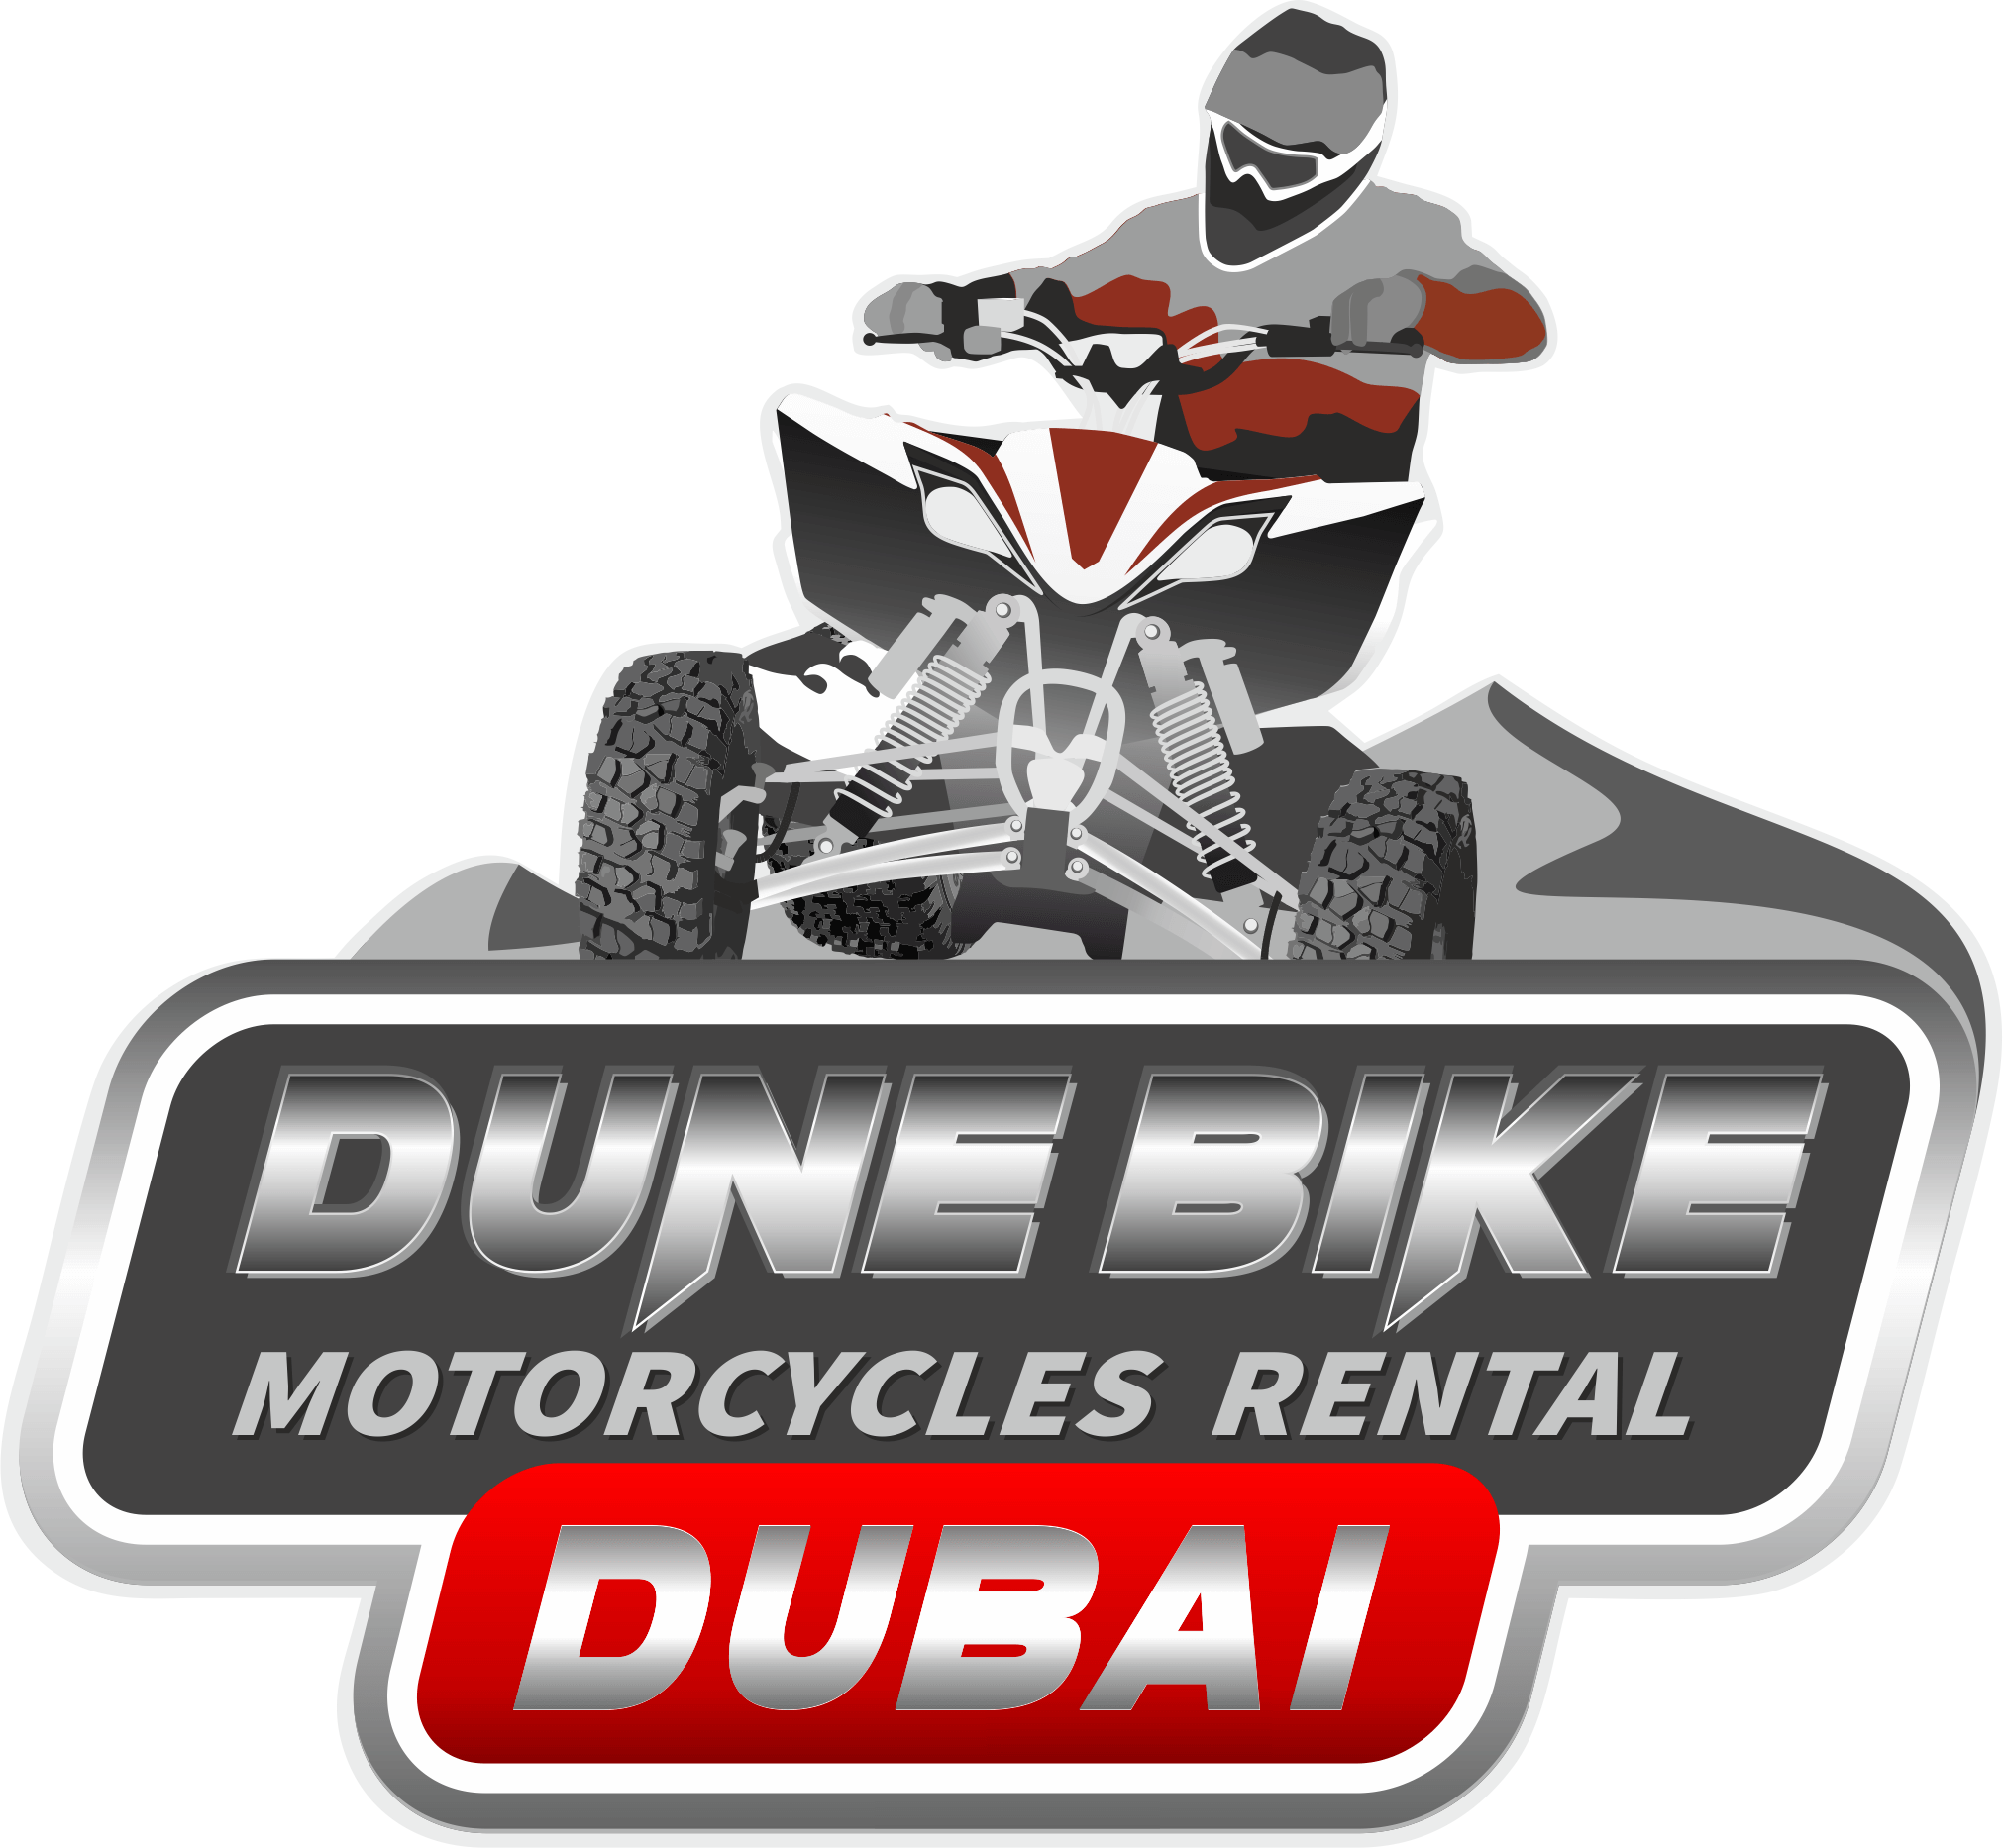 quadbikeadventuredubai Quad bike Motorcycle Dubai